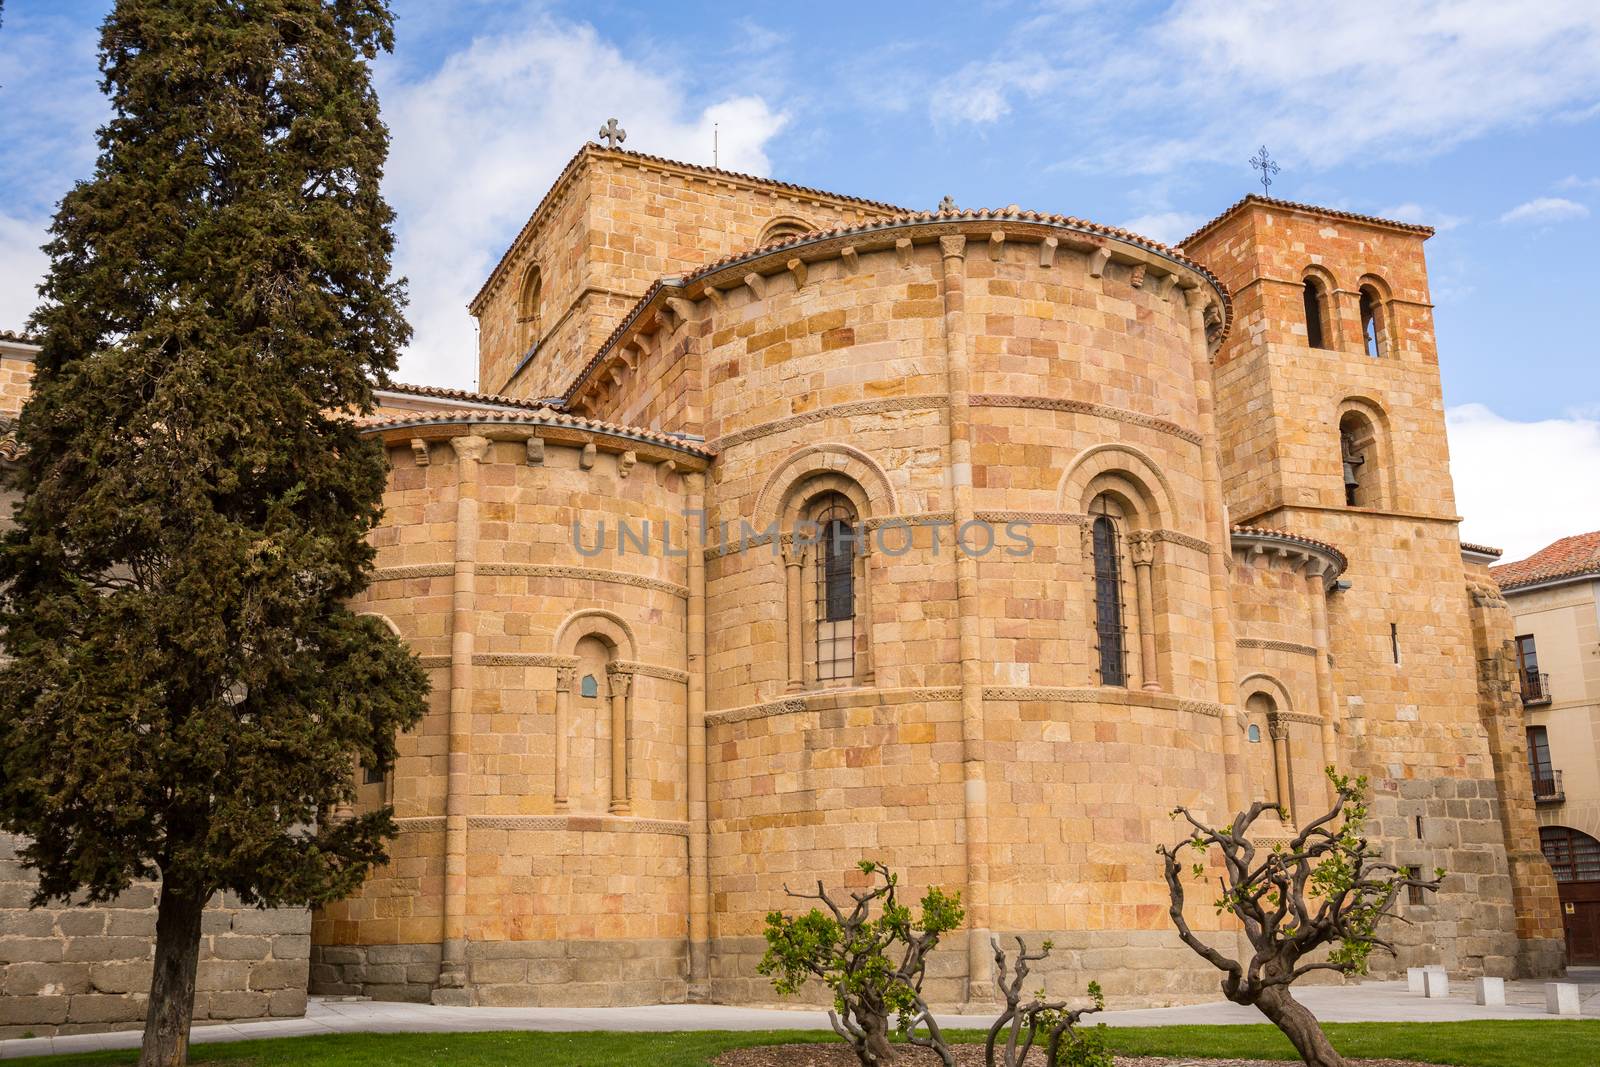 The old church of San Pedro in Avila, Spain